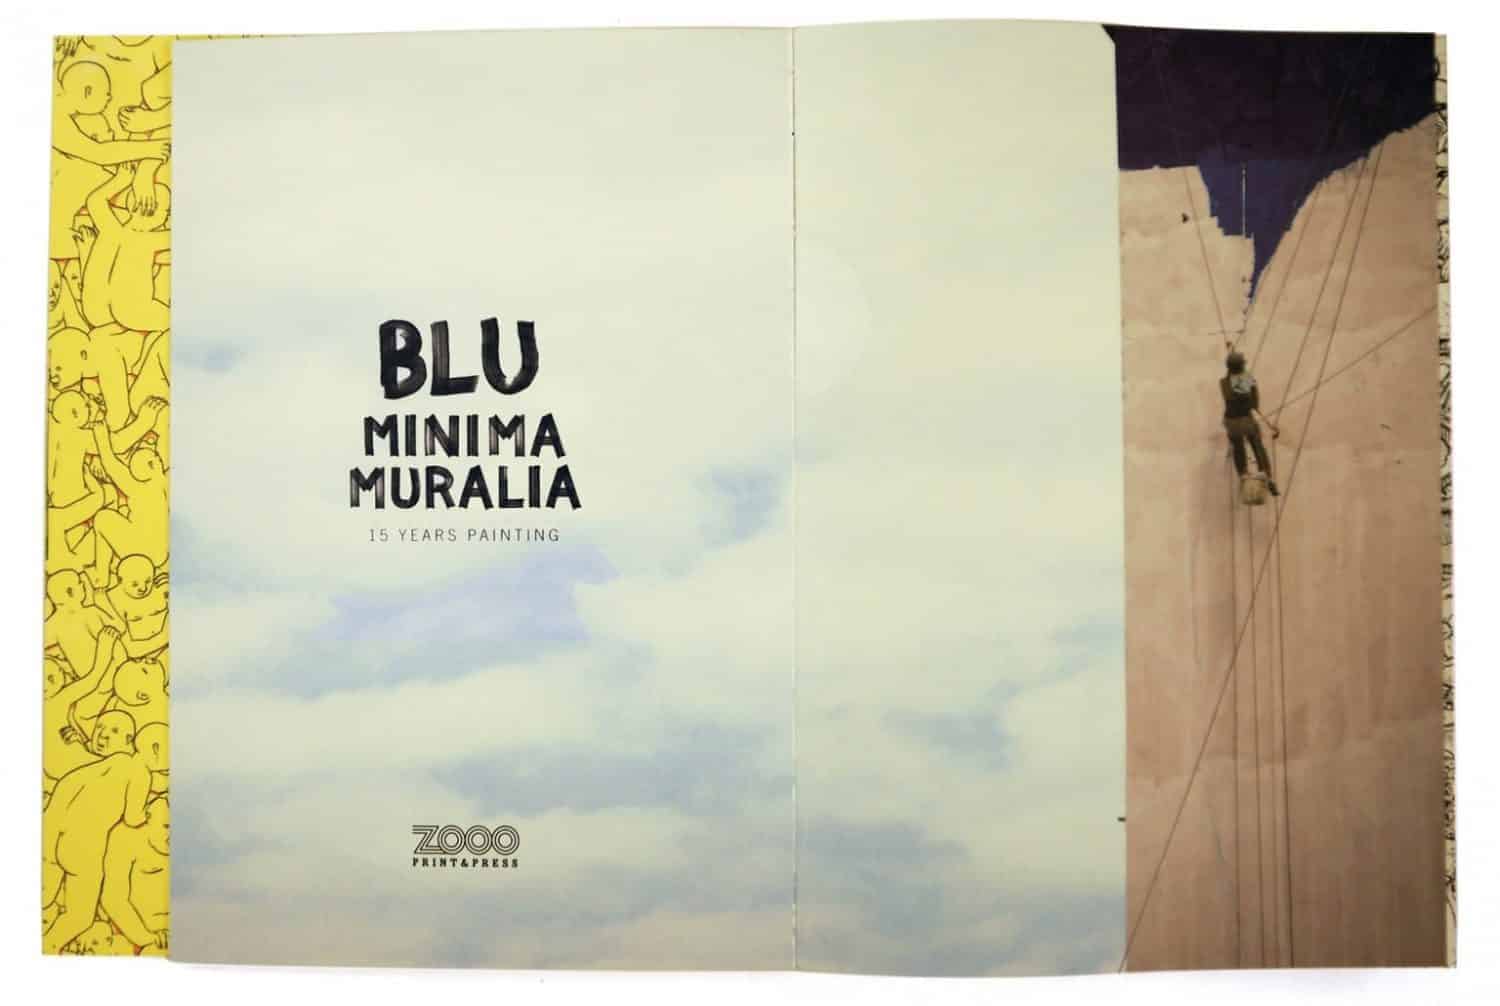 boek over Blu